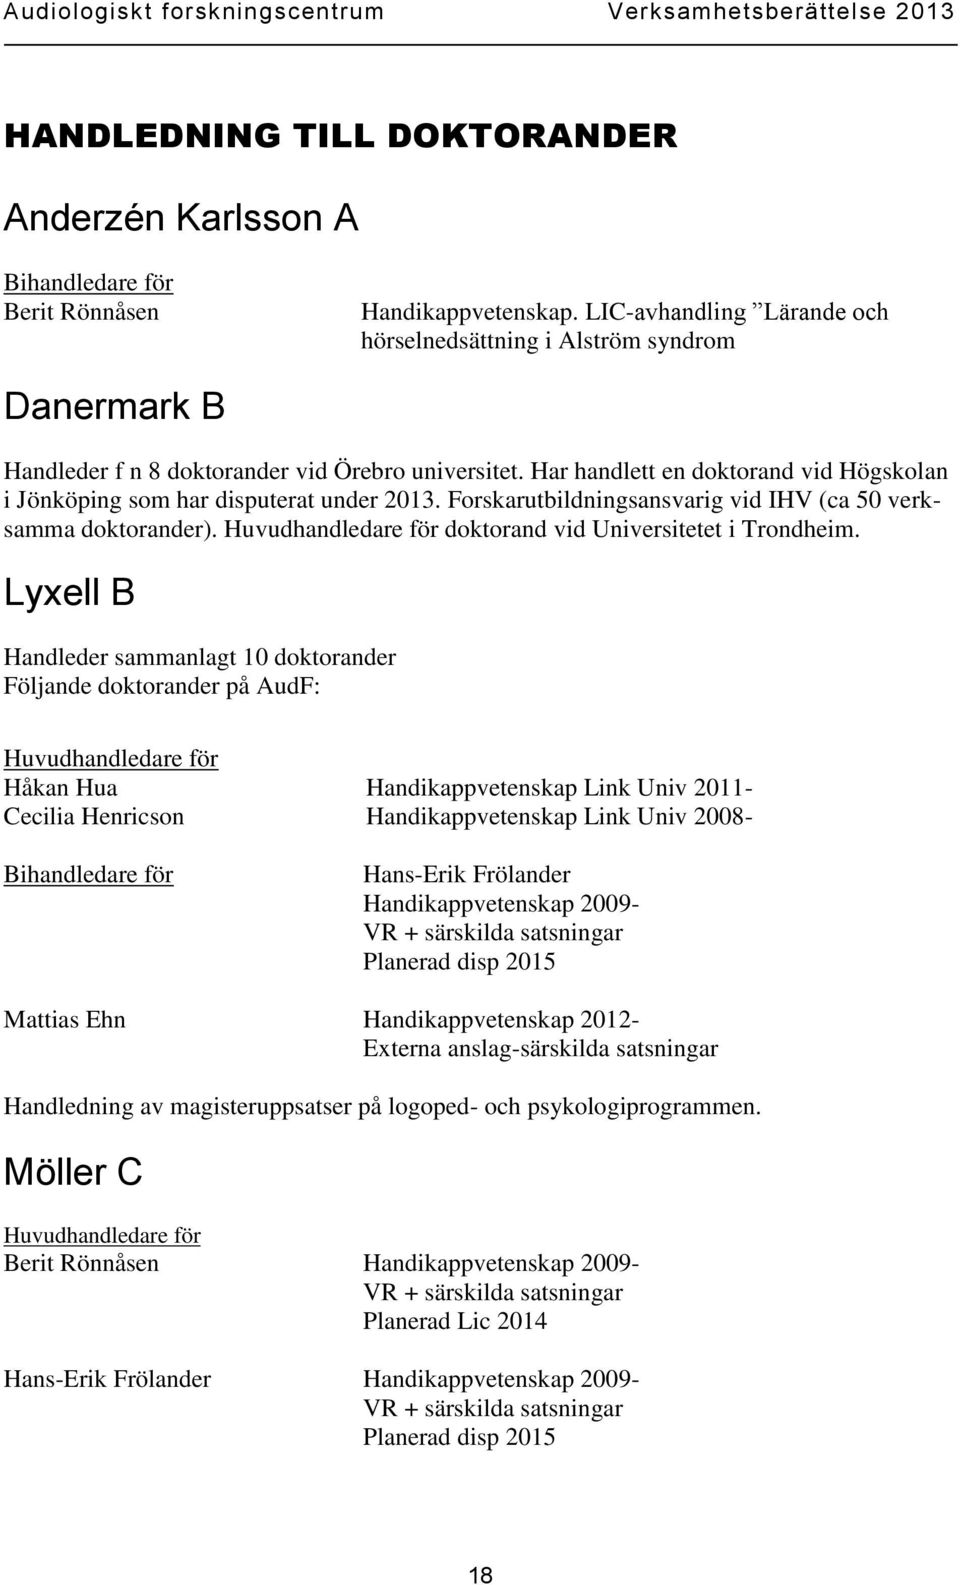 Har handlett en doktorand vid Högskolan i Jönköping som har disputerat under 2013. Forskarutbildningsansvarig vid IHV (ca 50 verksamma doktorander).